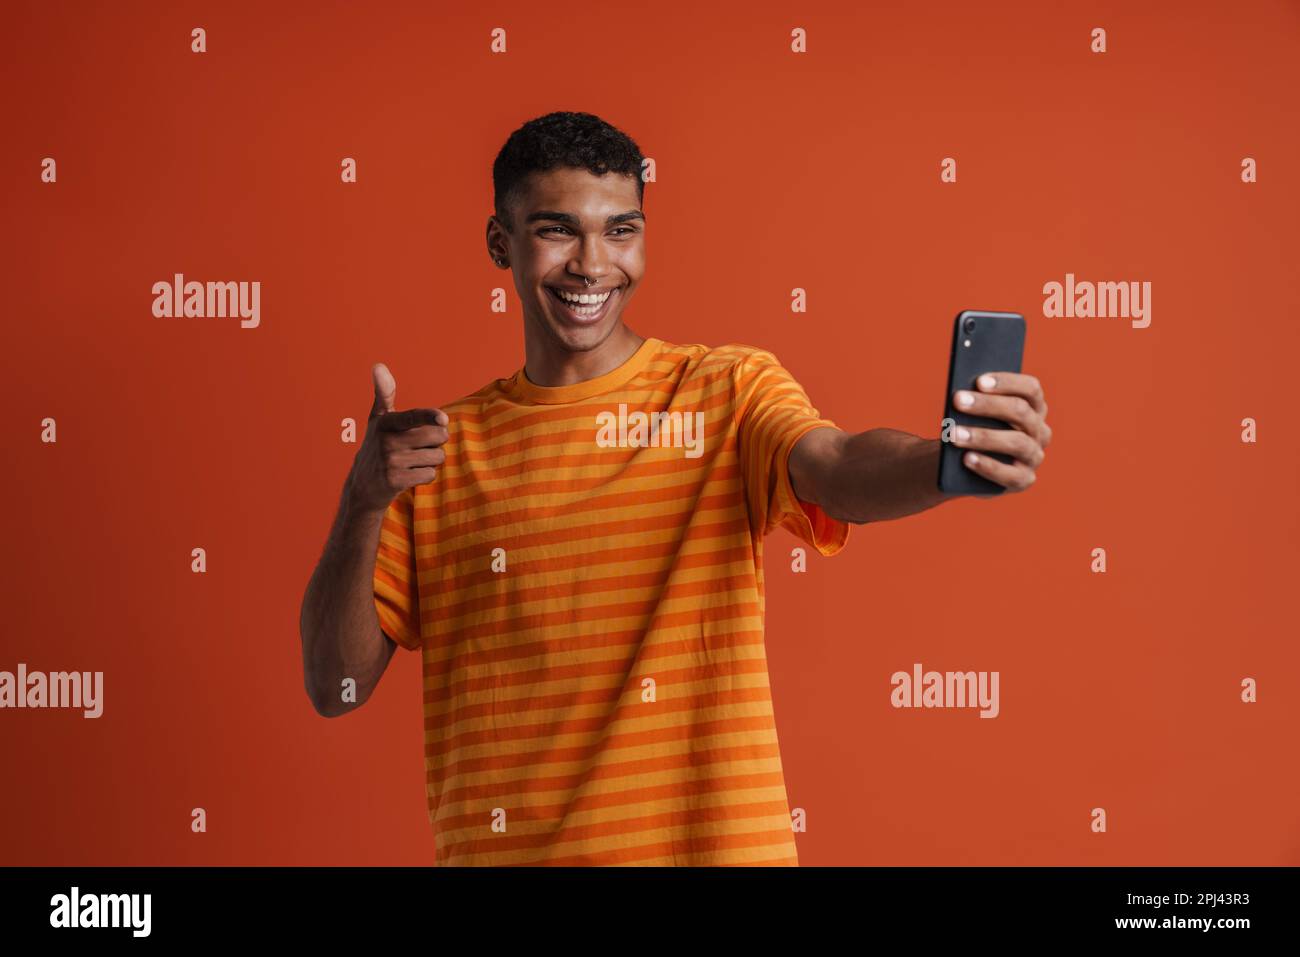 Junger, gutaussehender, glücklicher afrikanischer Mann mit Piercing, der eine Gesten mit Pistole macht und Selfie am Telefon macht, während er über einem isolierten orangefarbenen Hintergrund steht Stockfoto